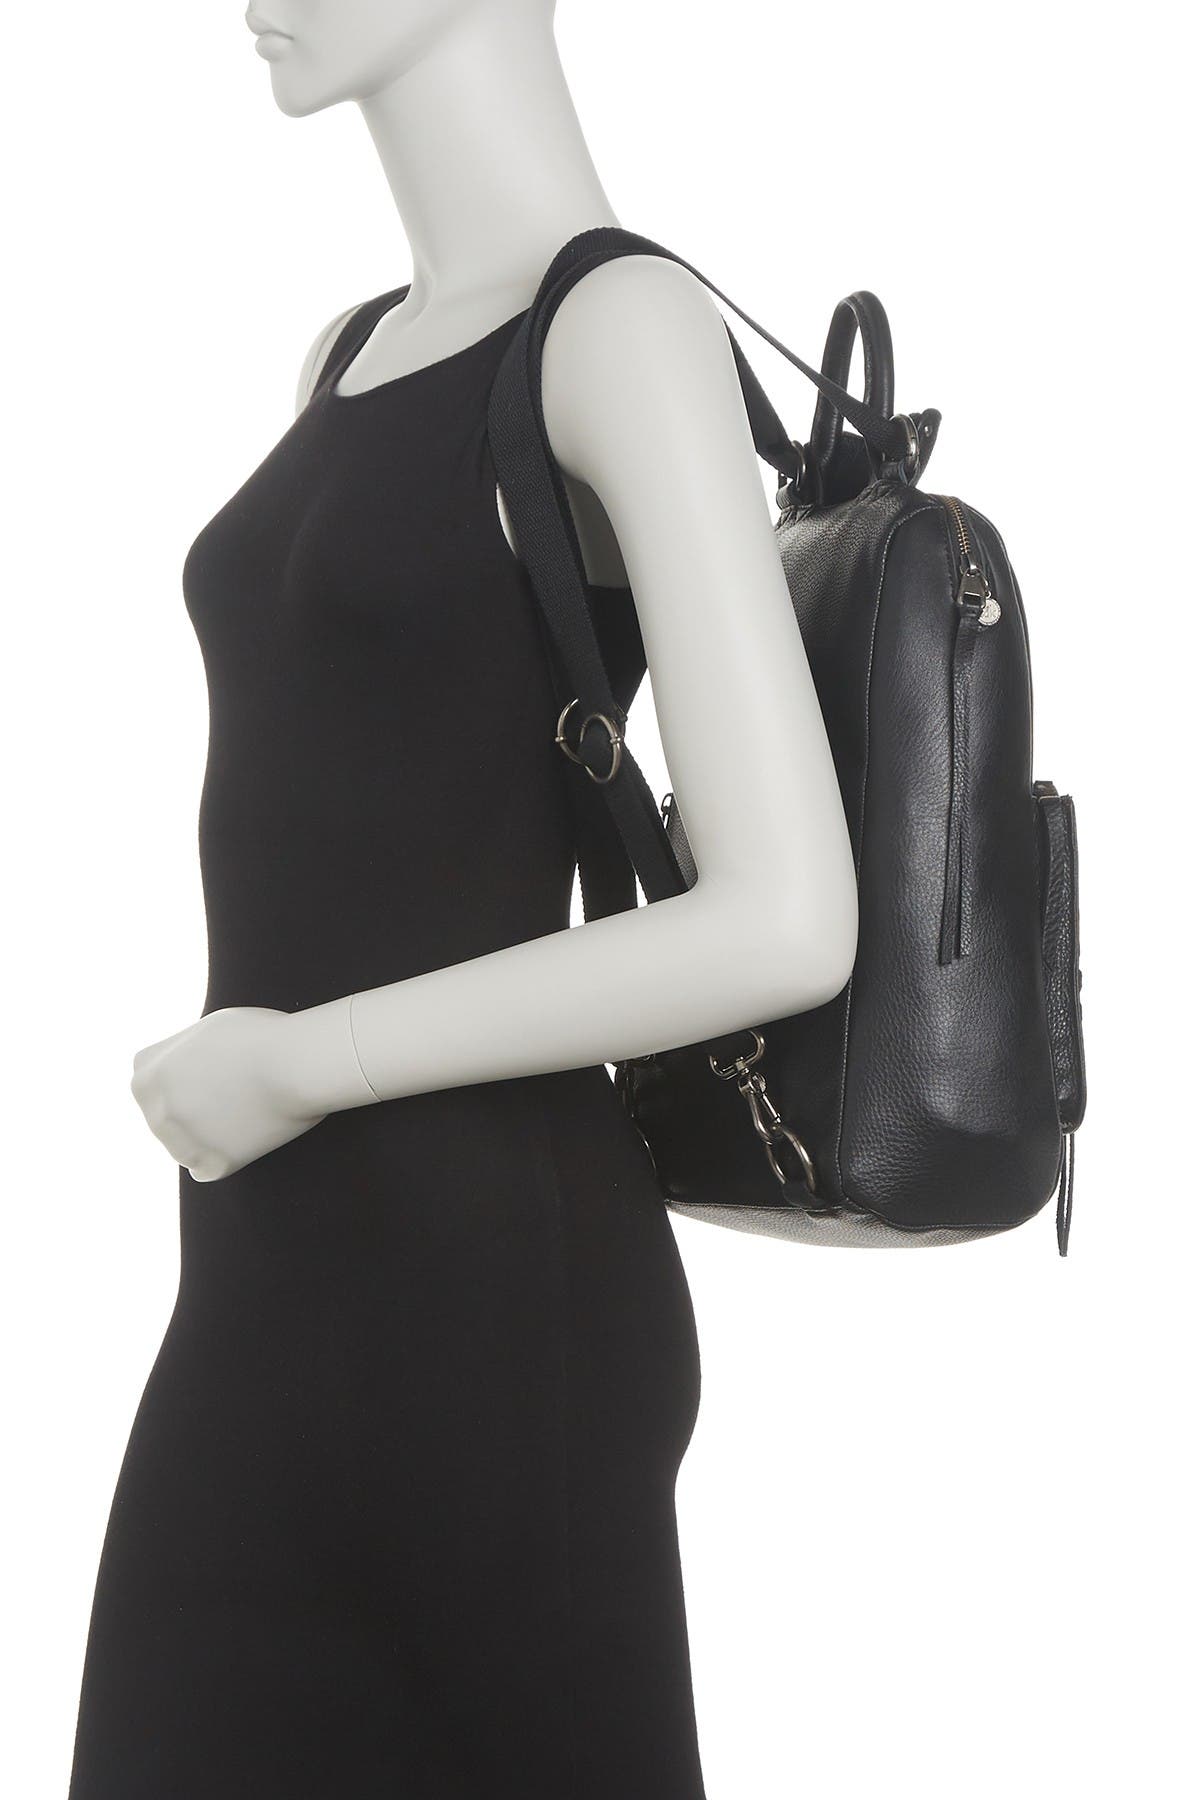 THE SAK Bags for Women | ModeSens